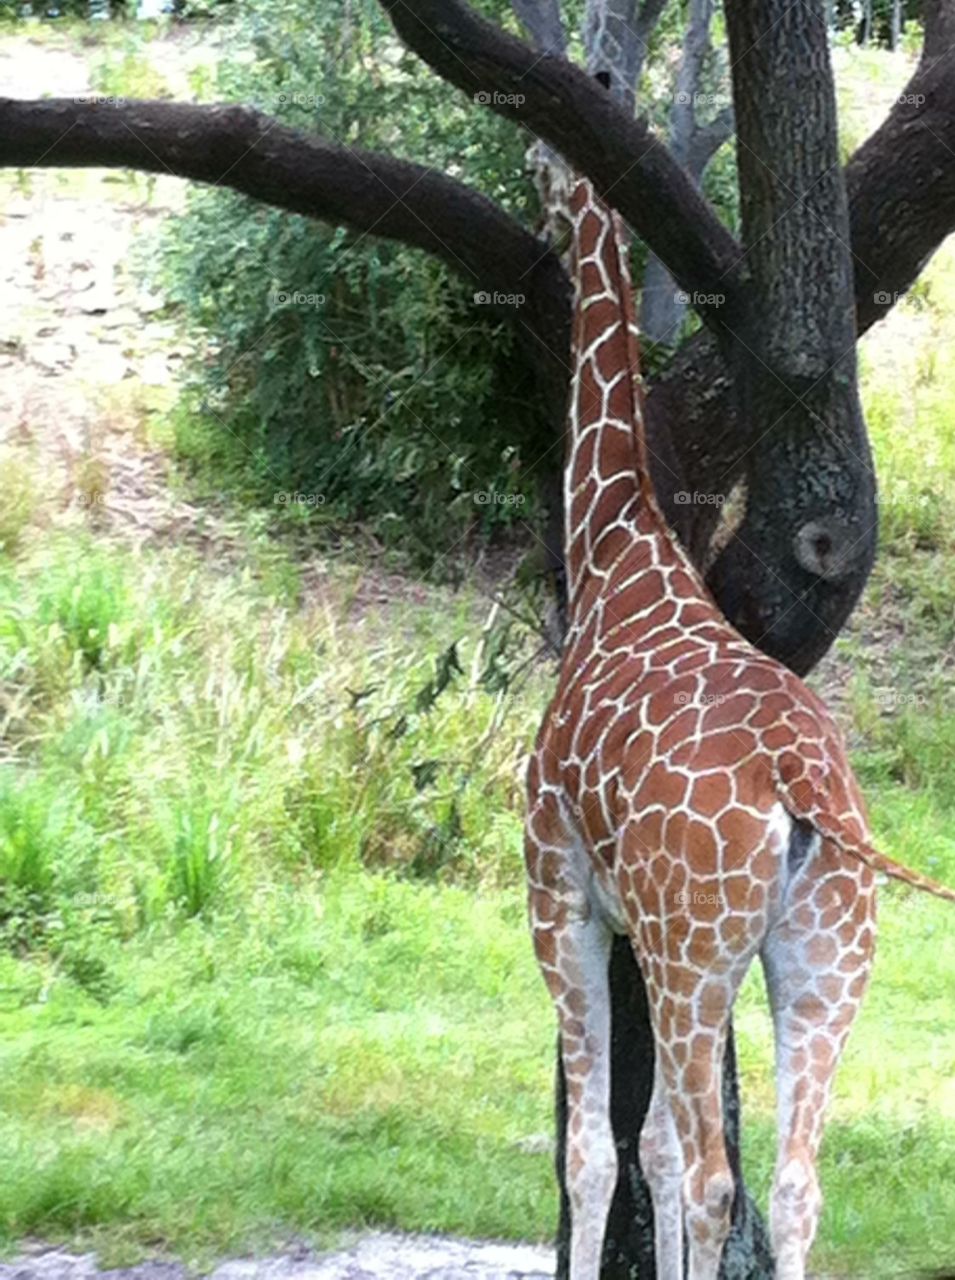 Giraffe . A giraffe standing at a tree